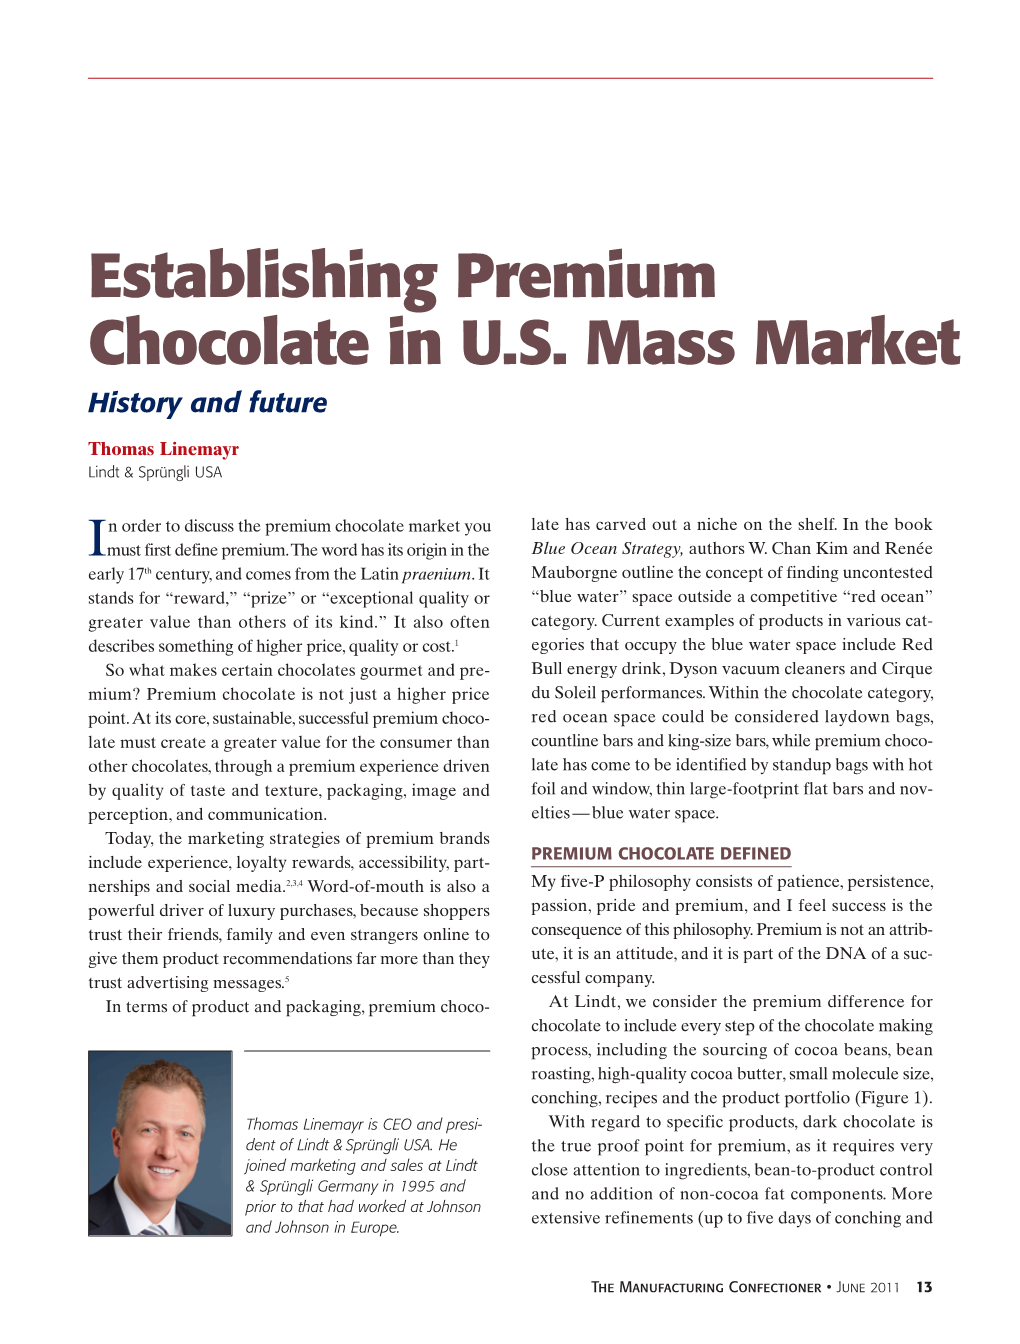 Establishing Premium Chocolate in U.S. Mass Market History and Future